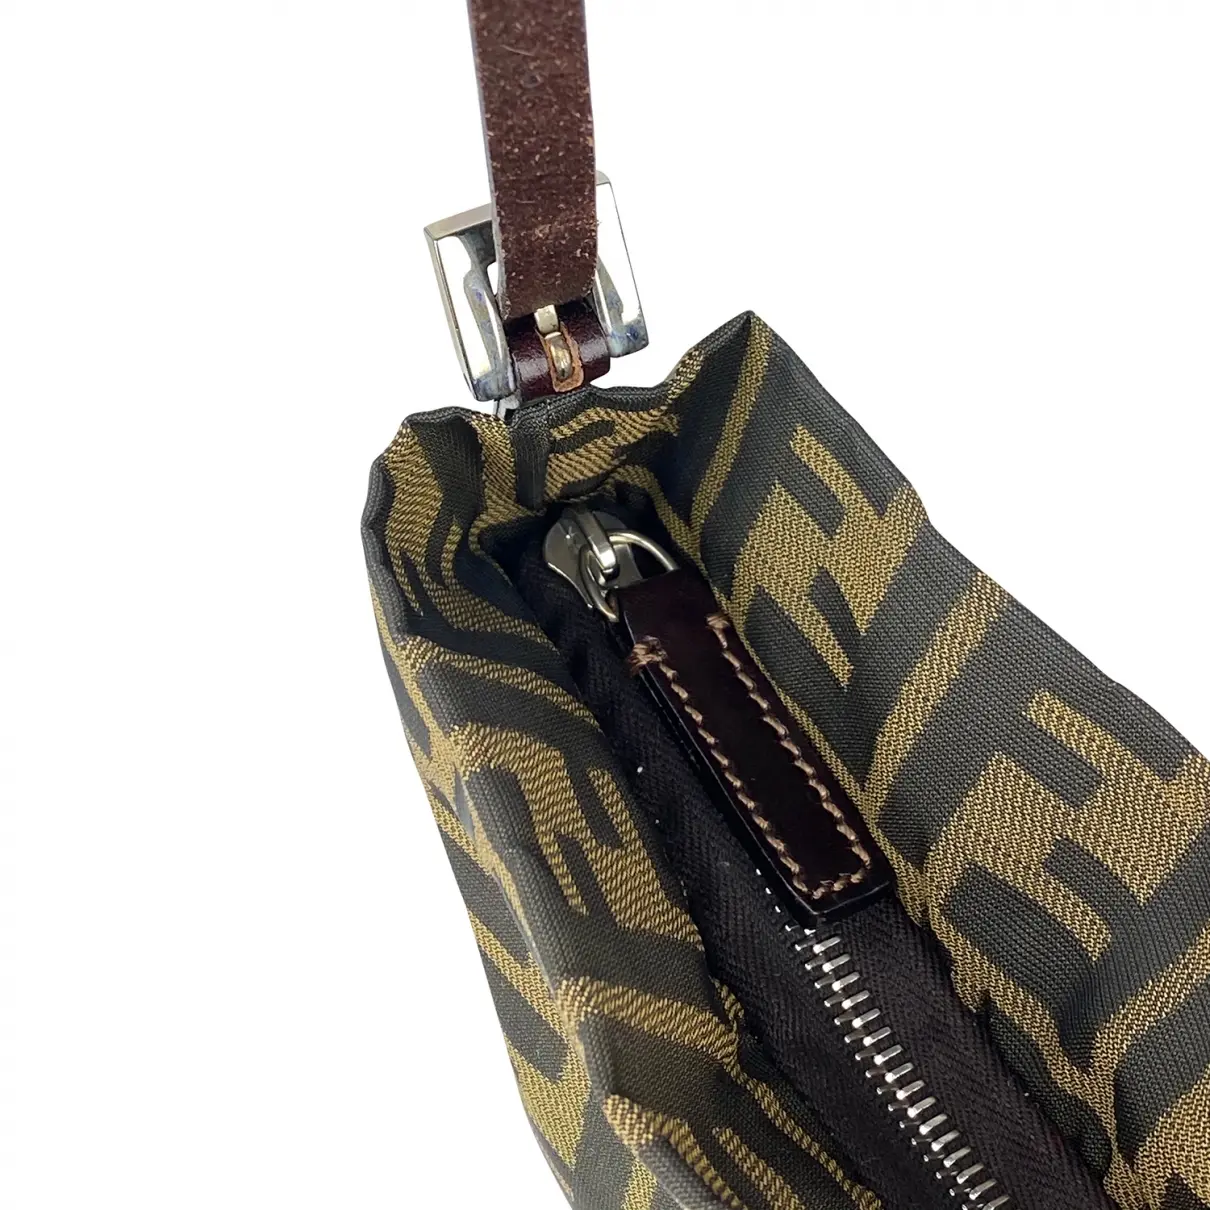 Fendi Baguette cloth handbag for sale - Vintage